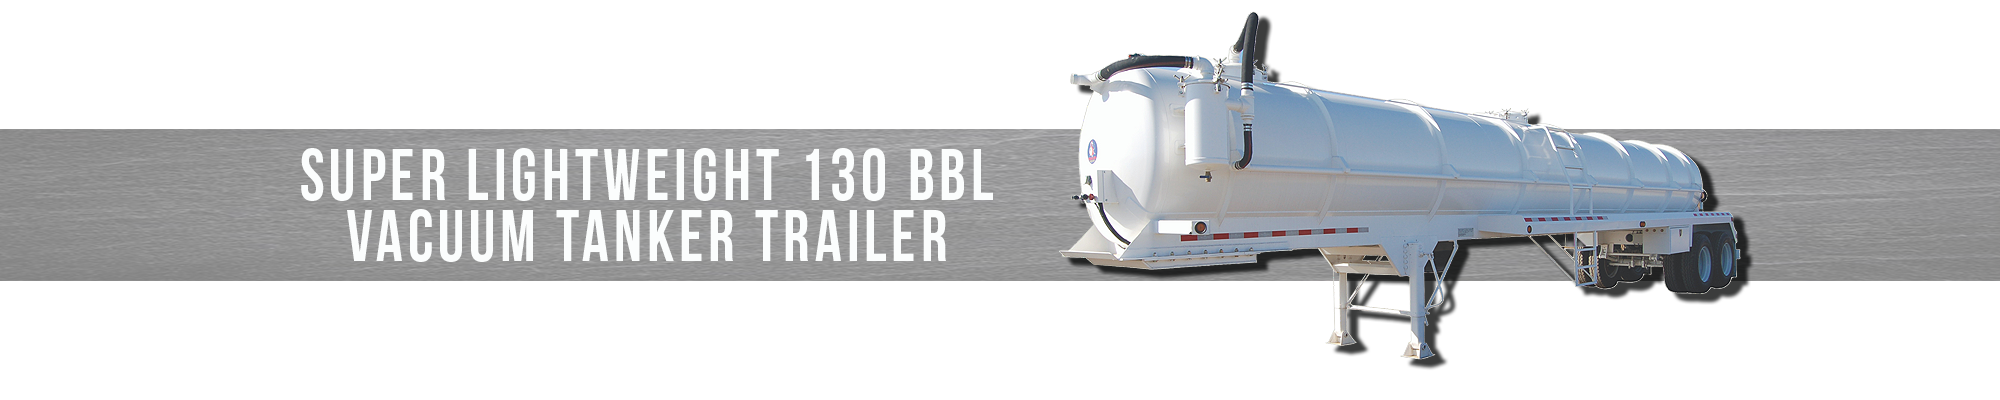 Super Lightweight 130 BBL Vacuum Tanker Trailer